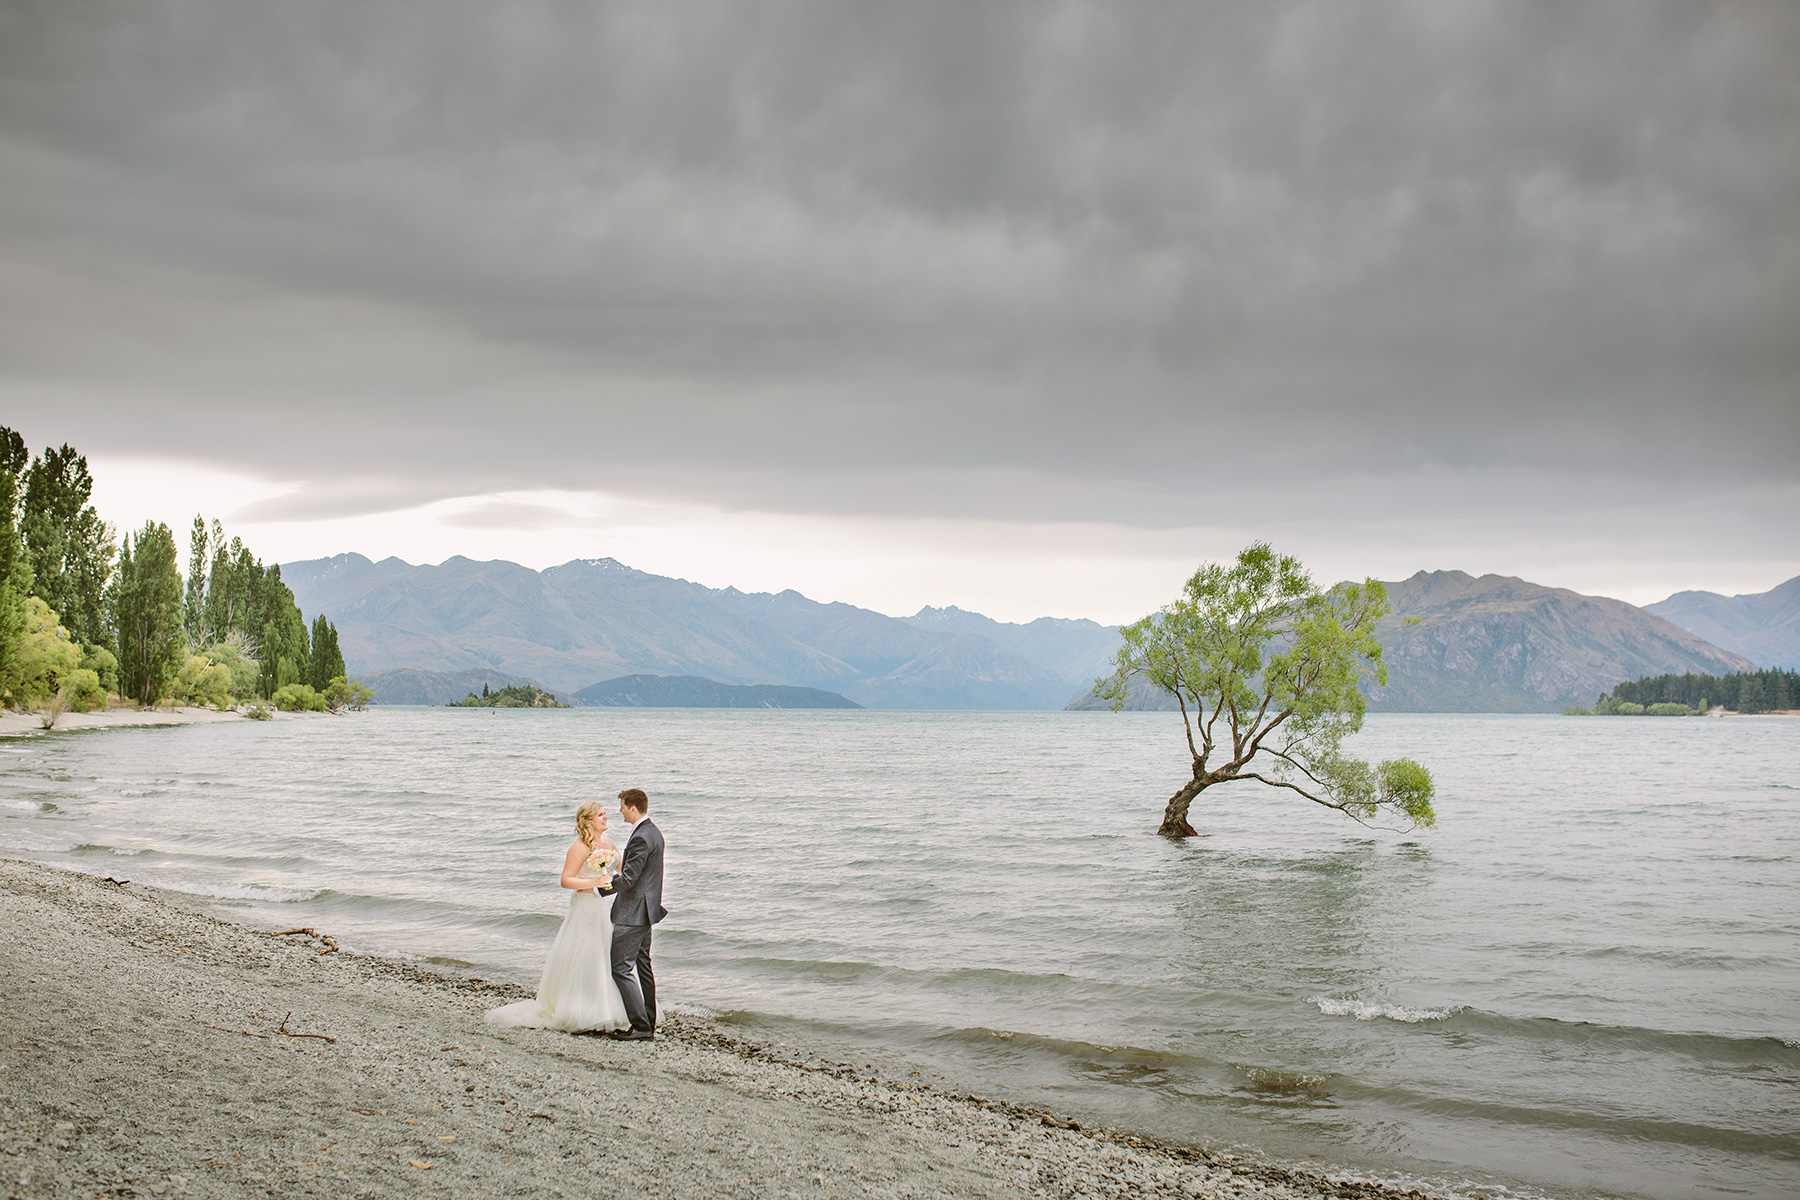 Skye_Steve_New-Zealand-Wedding_036